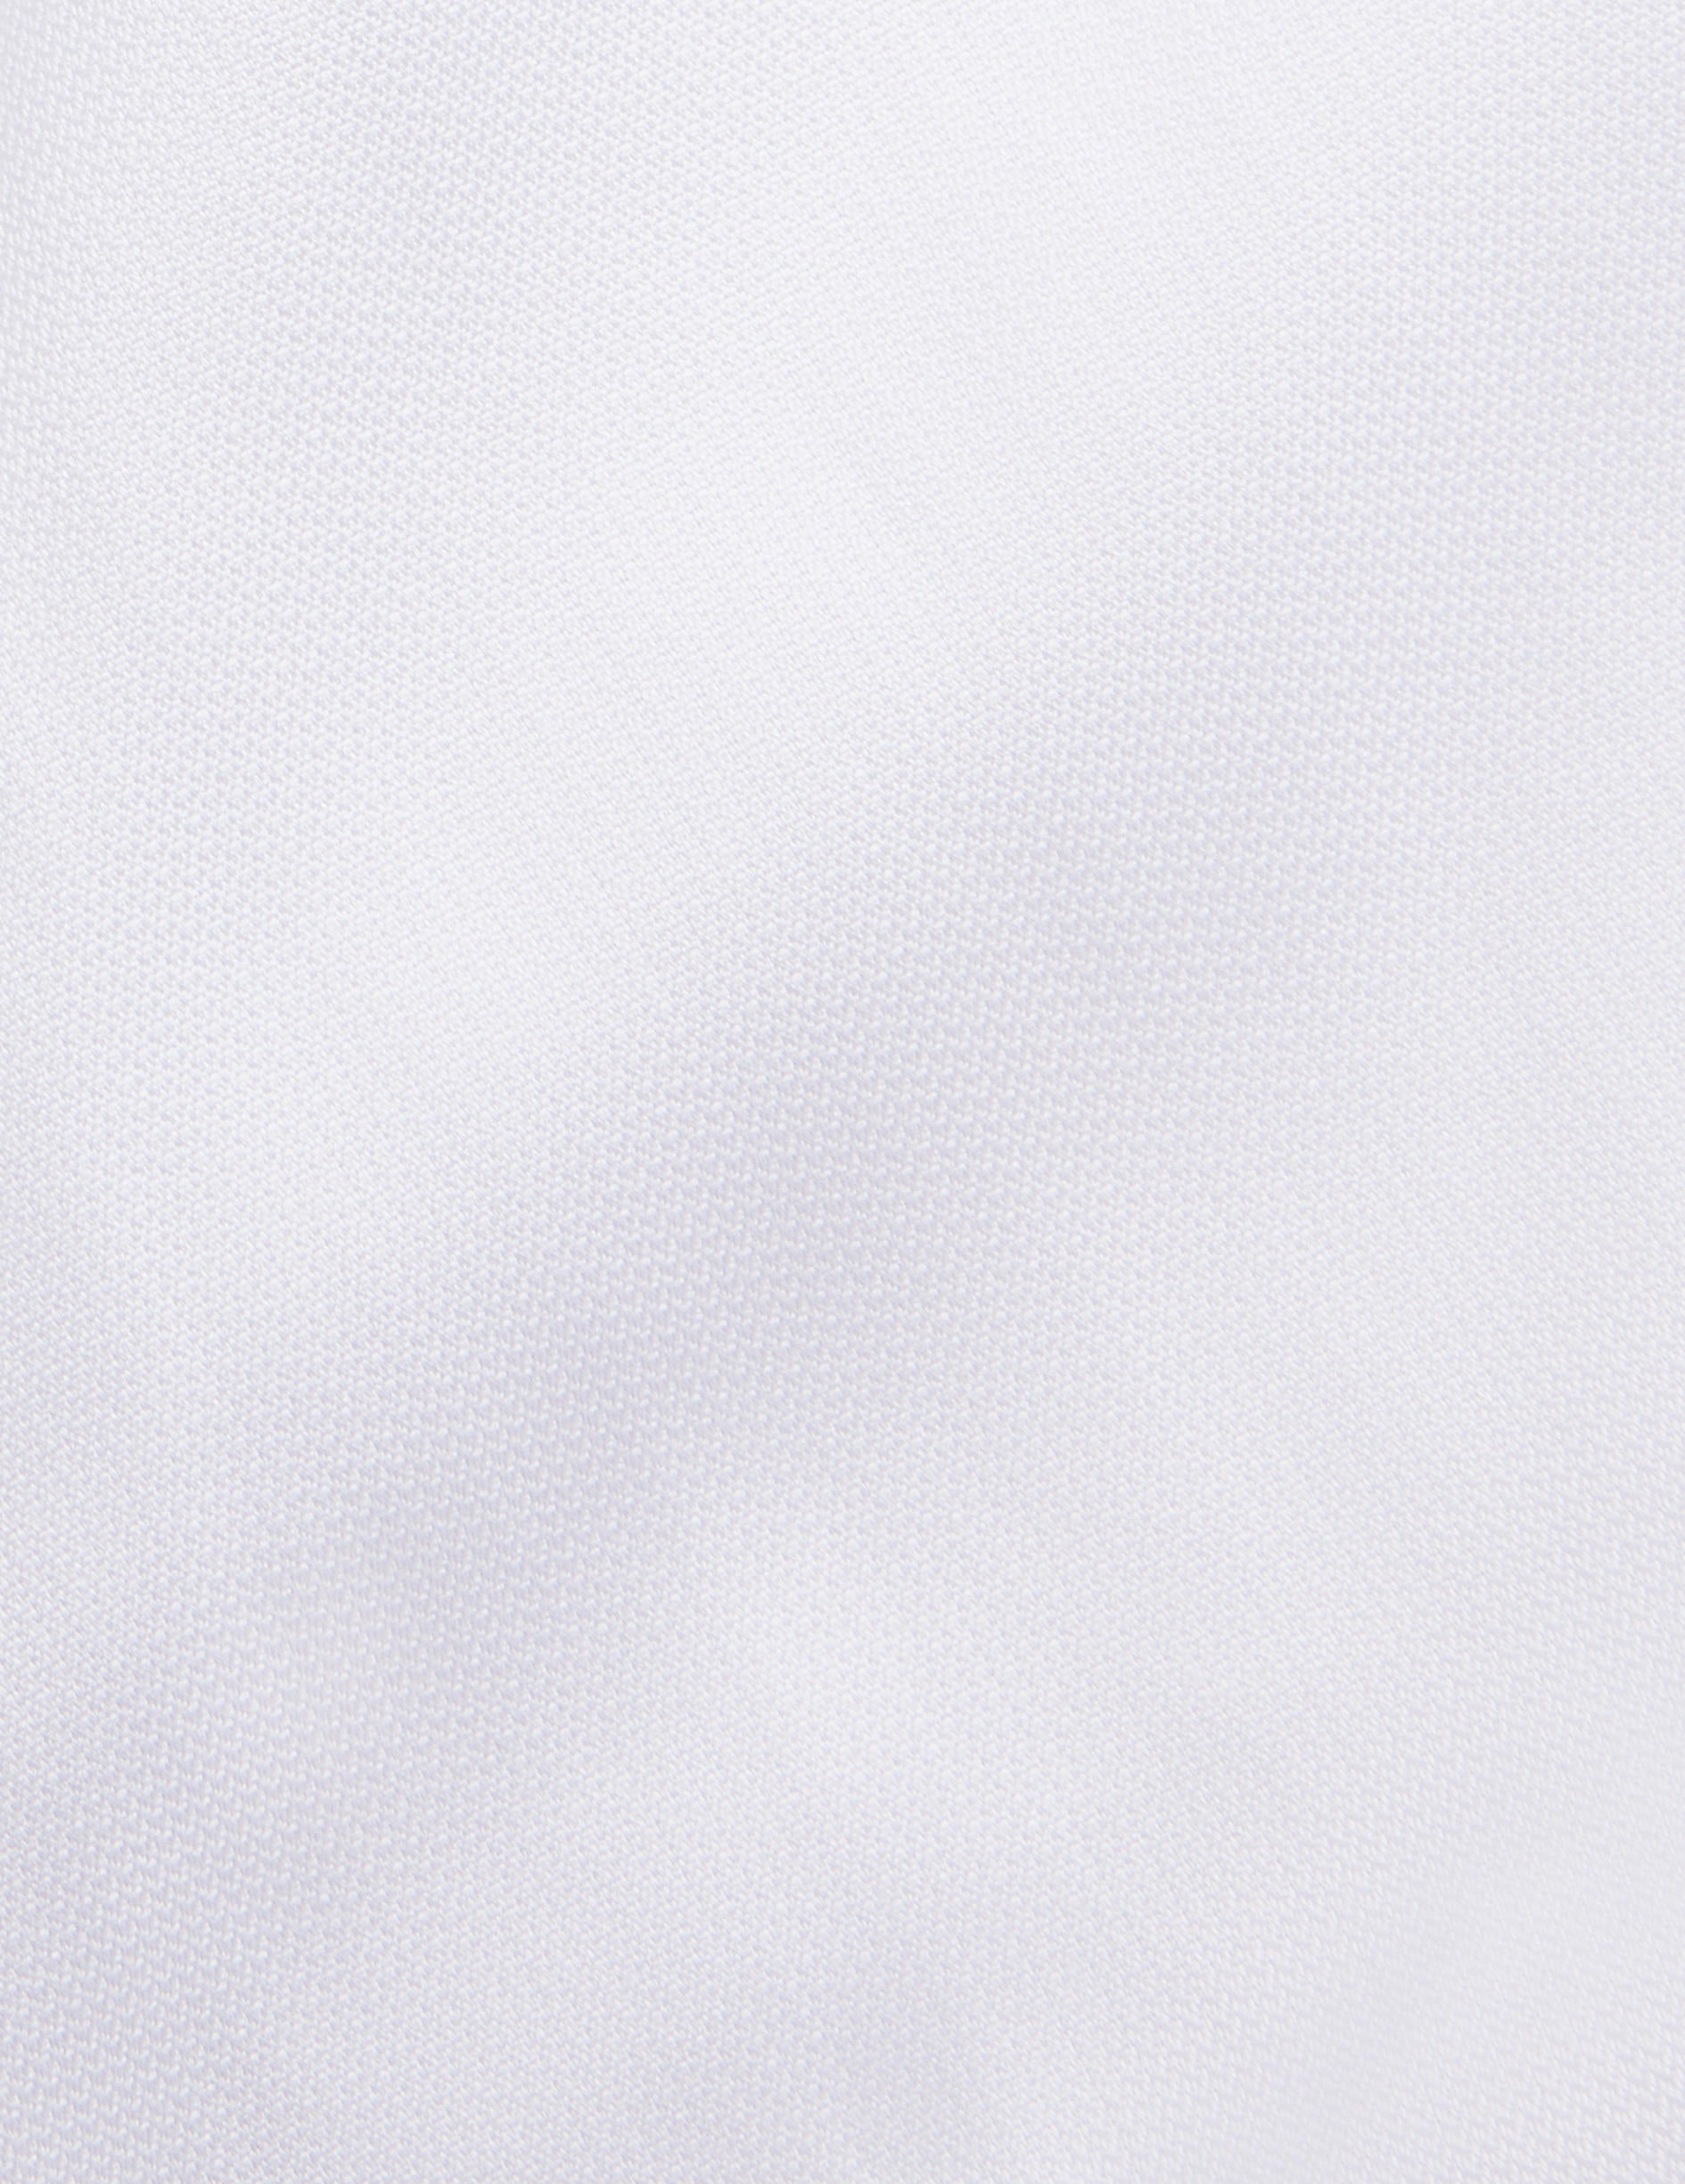 Chemise Semi-ajustée blanche - Façonné - Col Figaret